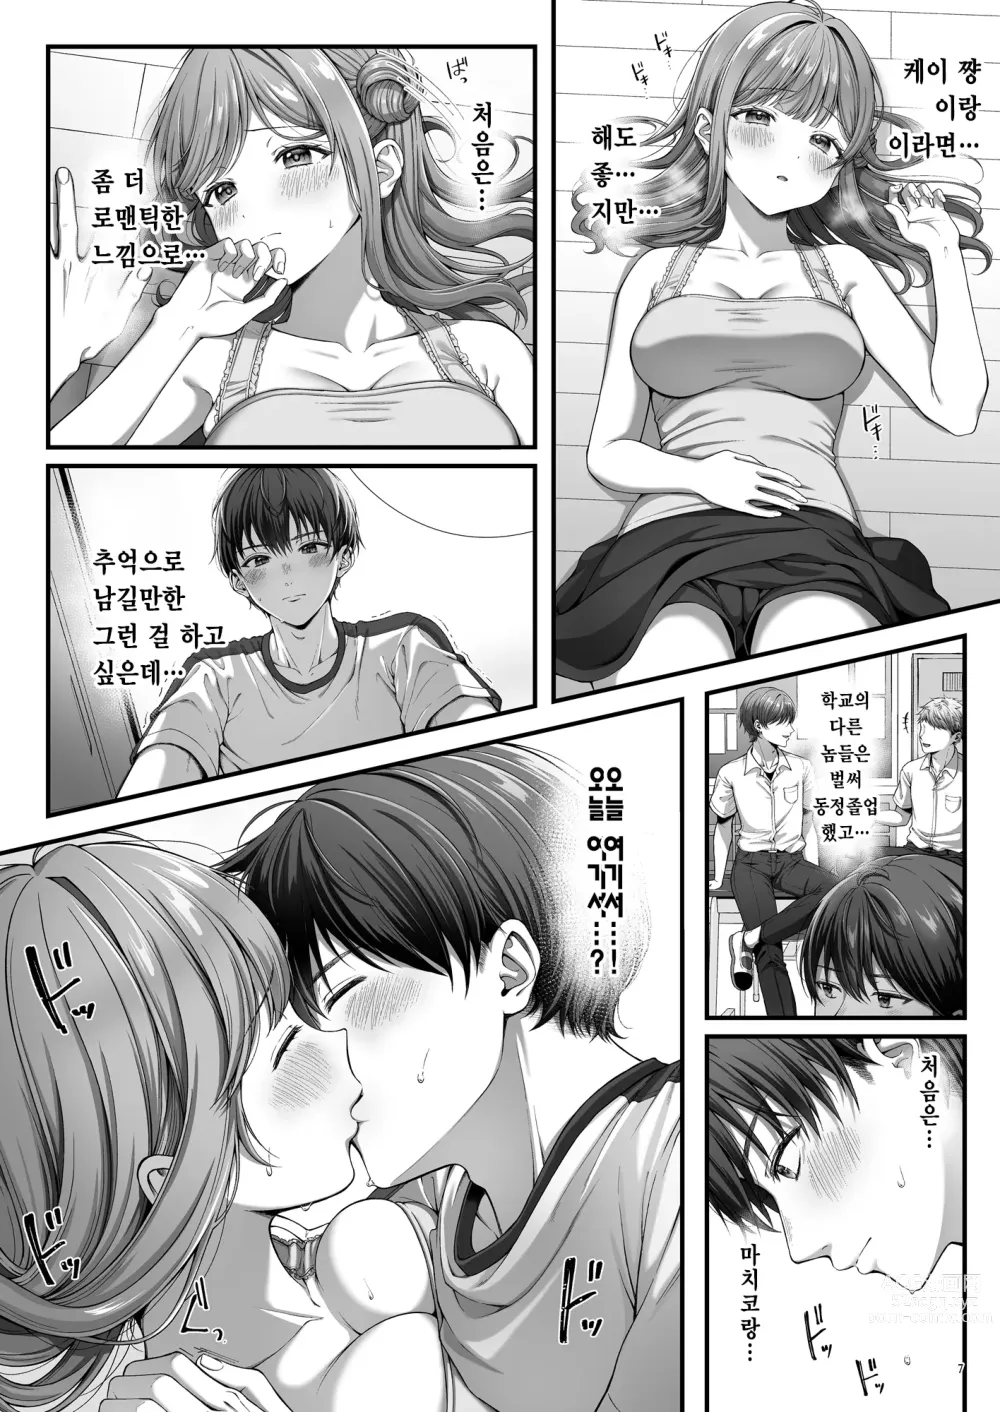 Page 9 of doujinshi 서머타임 홈스테이를 온 거근 유학생에게 개발 당한 처녀